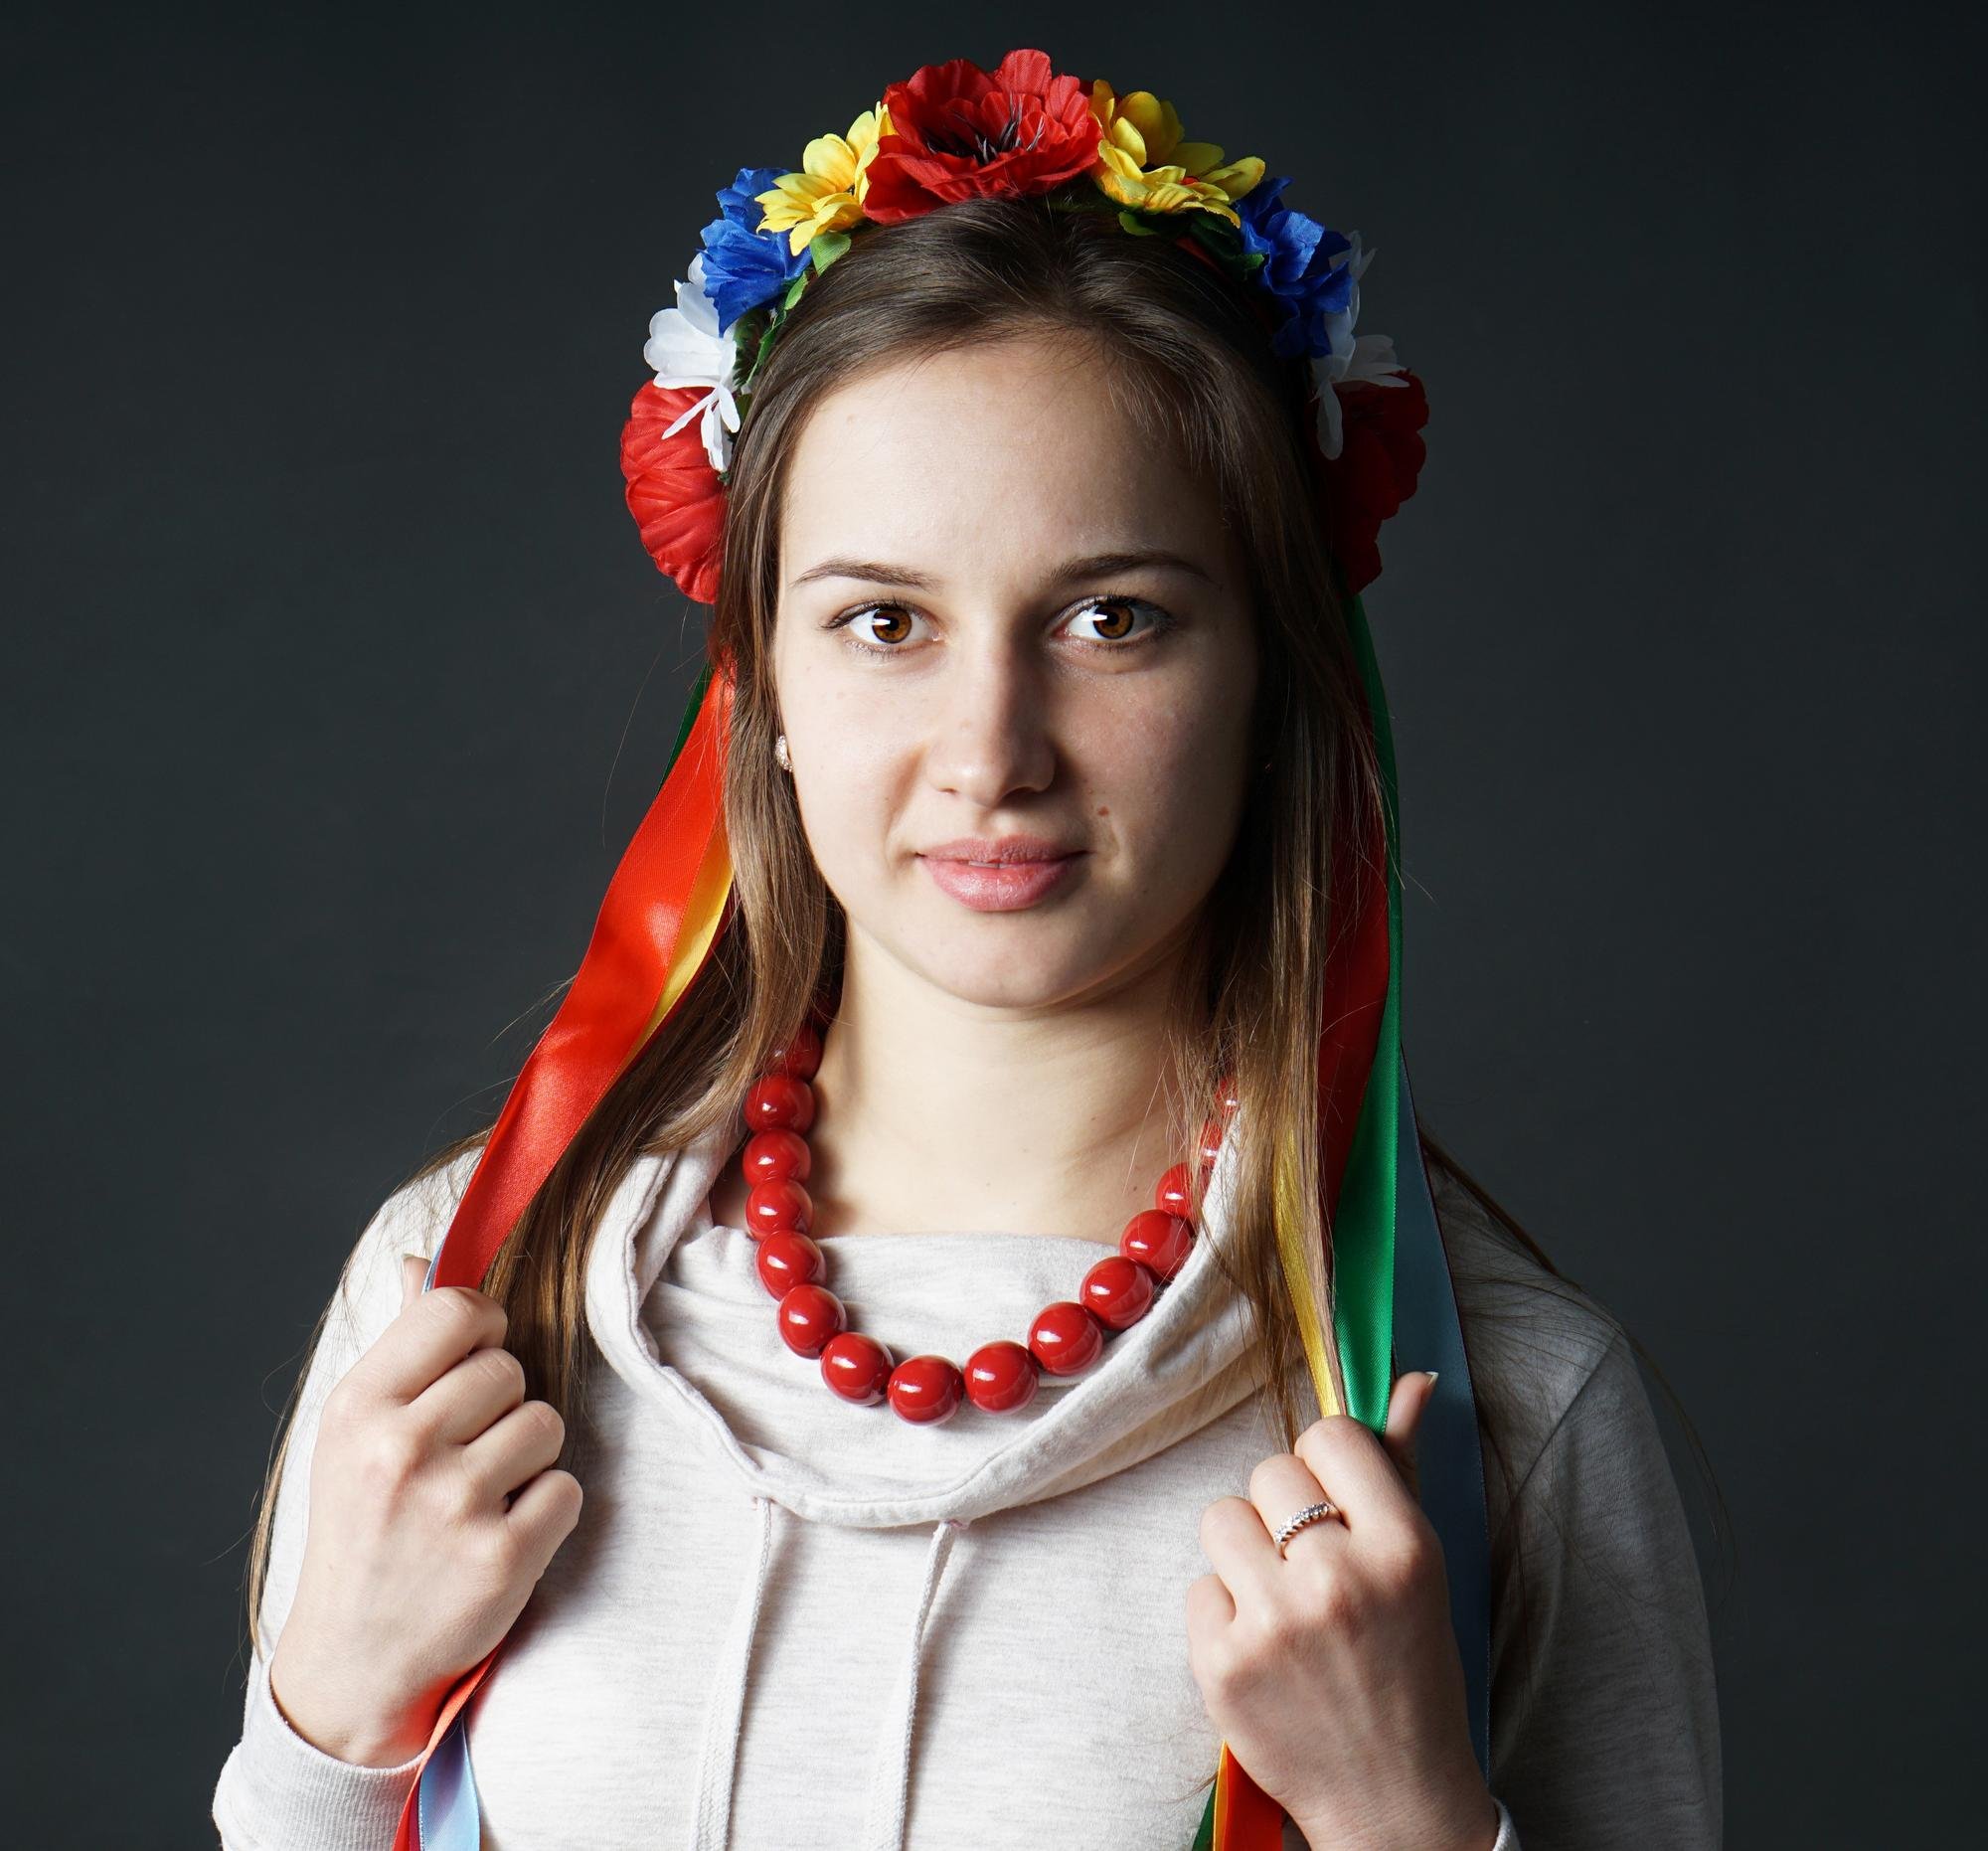 Типичные украинцы фото